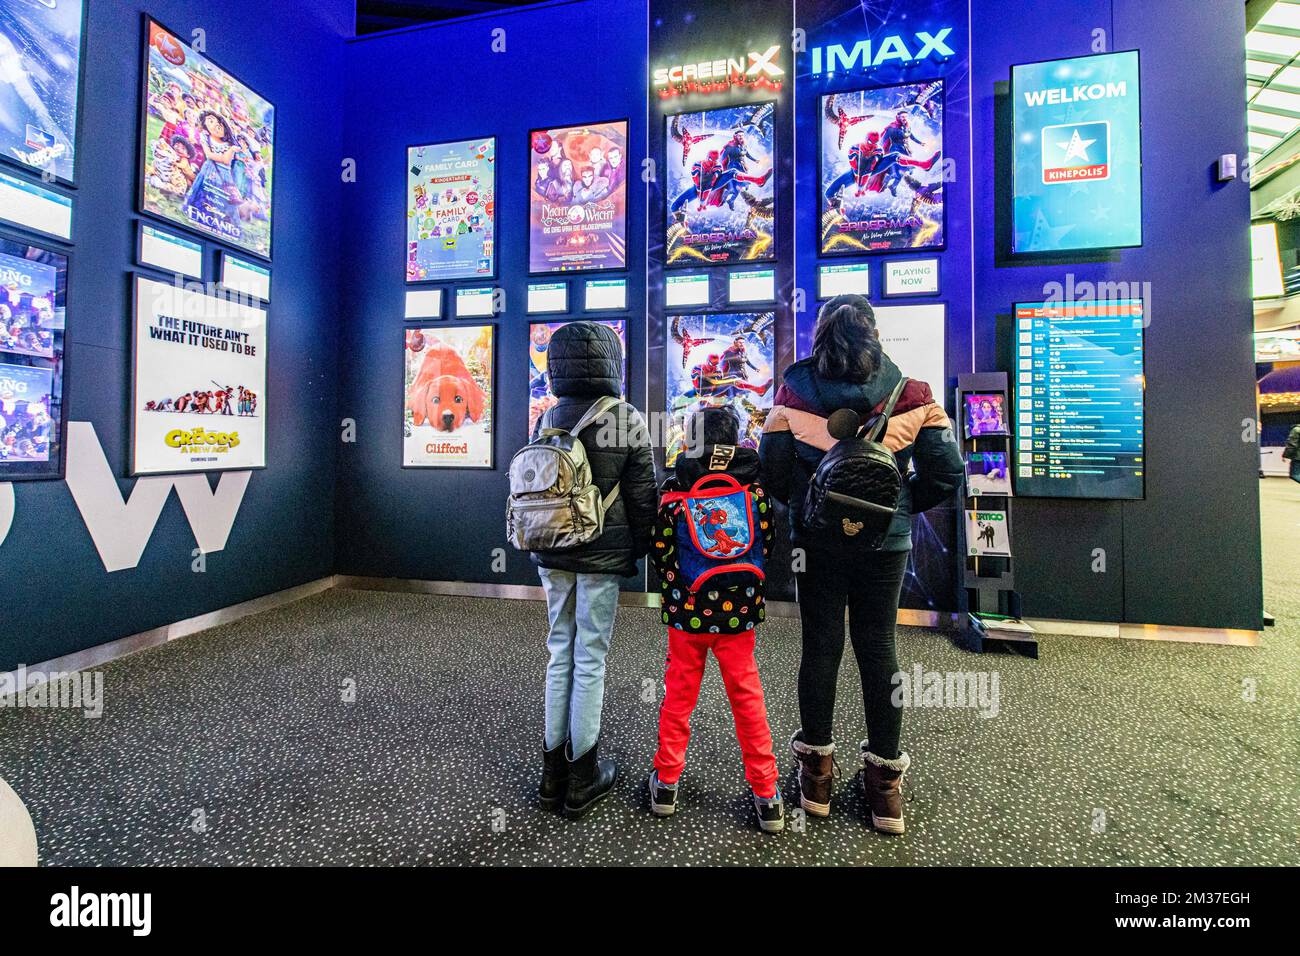 L'illustration montre des enfants regardant une affiche Spiderman dans un cinéma Kinepolis à Anvers, vendredi 24 décembre 2021. Kinepolis a prévu d'autres projections du dernier film de 'Spider-Man'. Les cinémas devront à nouveau fermer leurs portes à partir de dimanche en raison de la pandémie de corona. BELGA PHOTO JONAS ROOSENS Banque D'Images